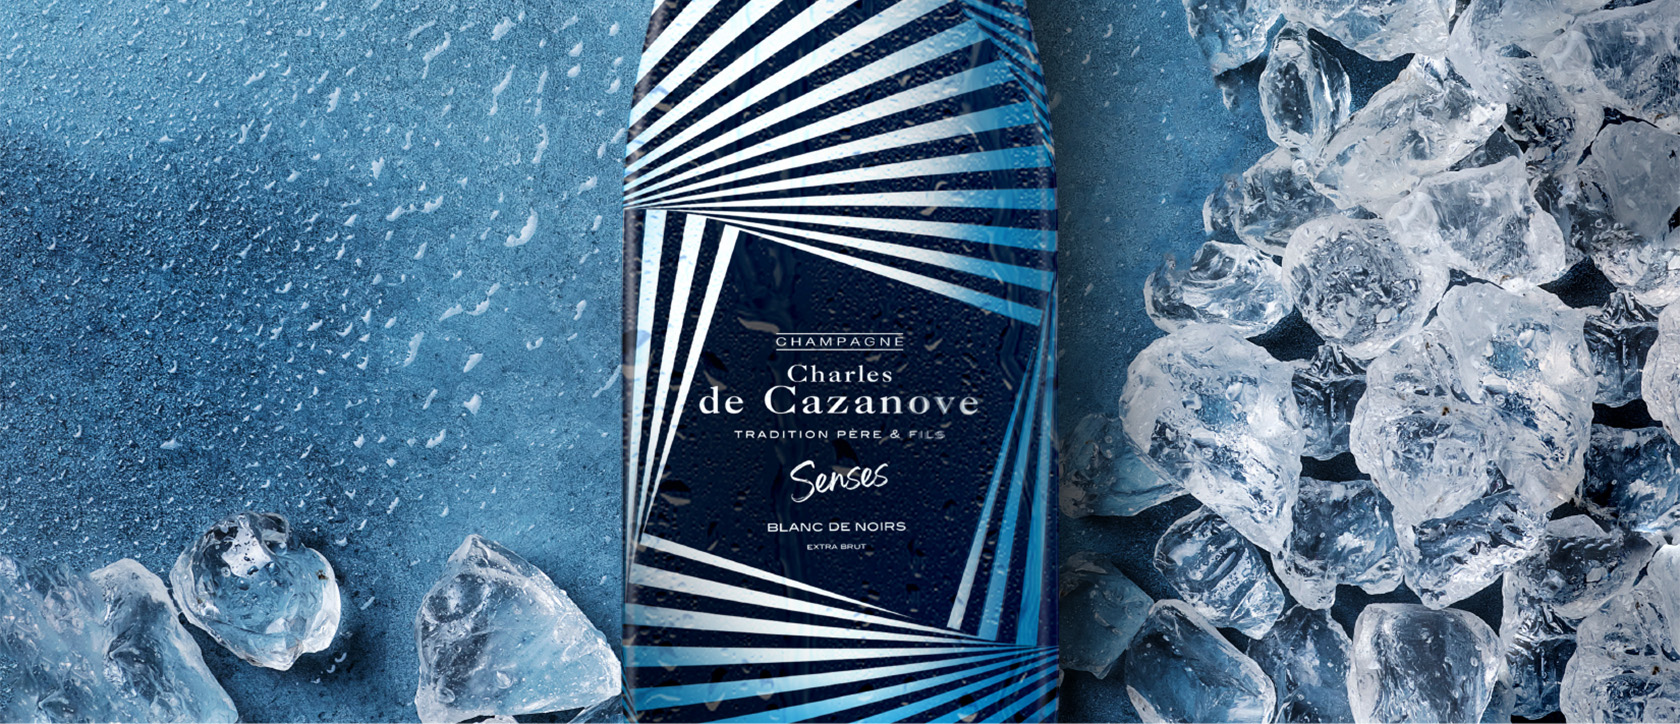 Champagne Charles de Casanove - Senses